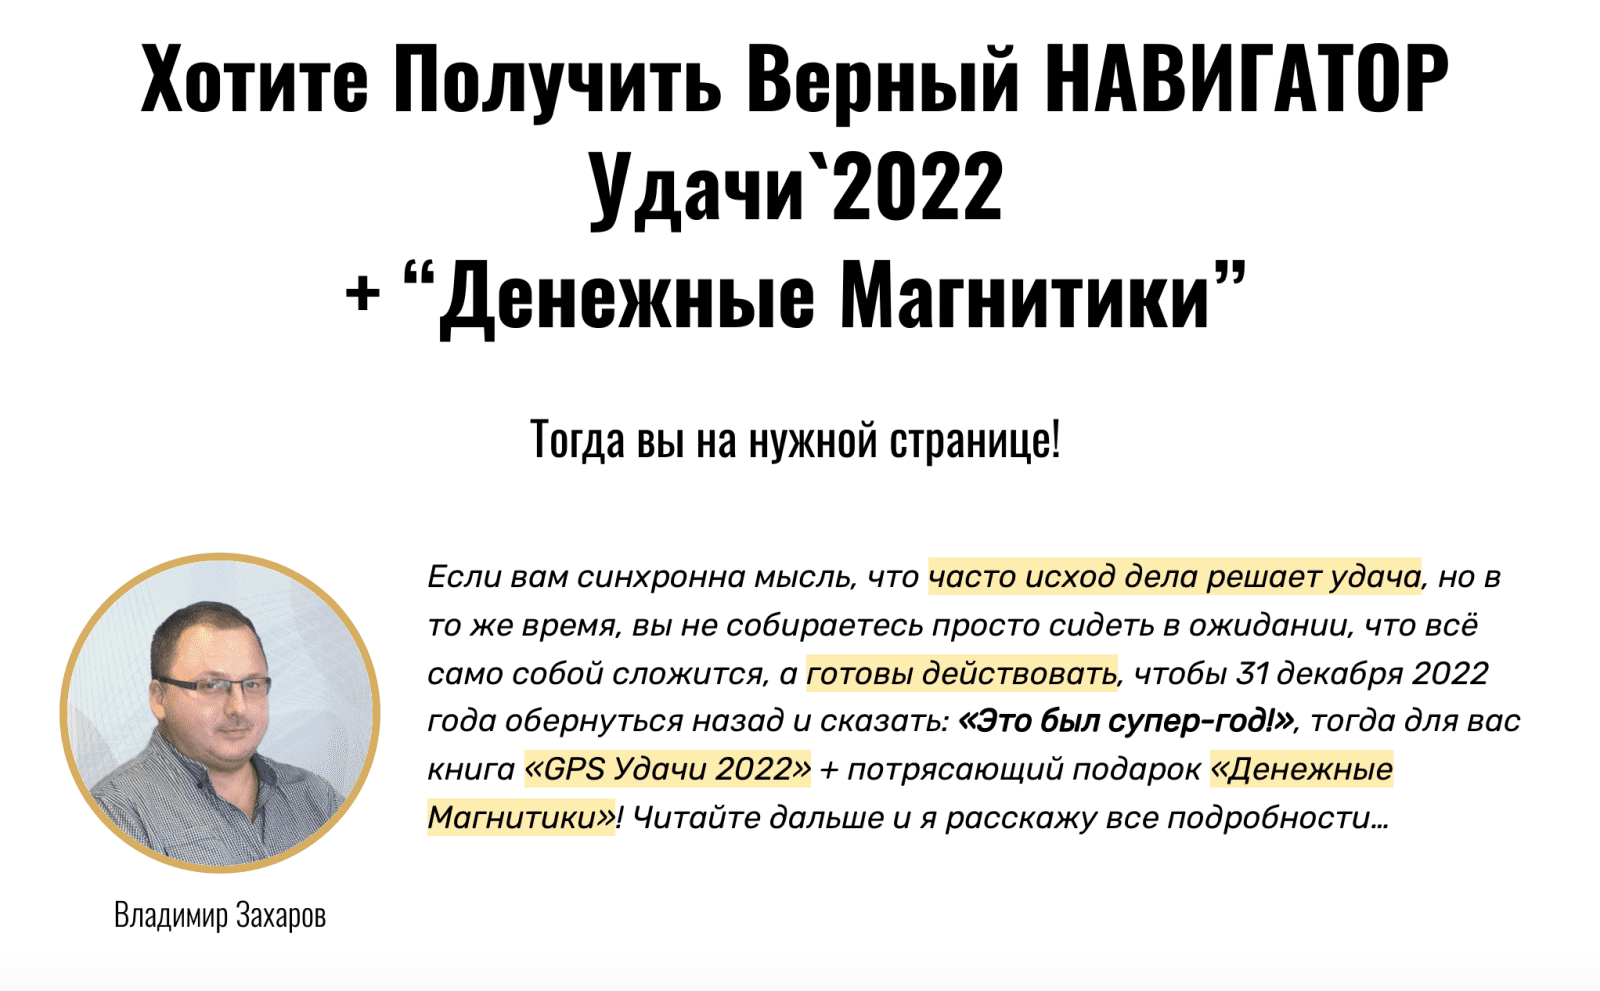 Изображение [Владимир Захаров] GPS Удачи 2022 (2021) в посте 252438